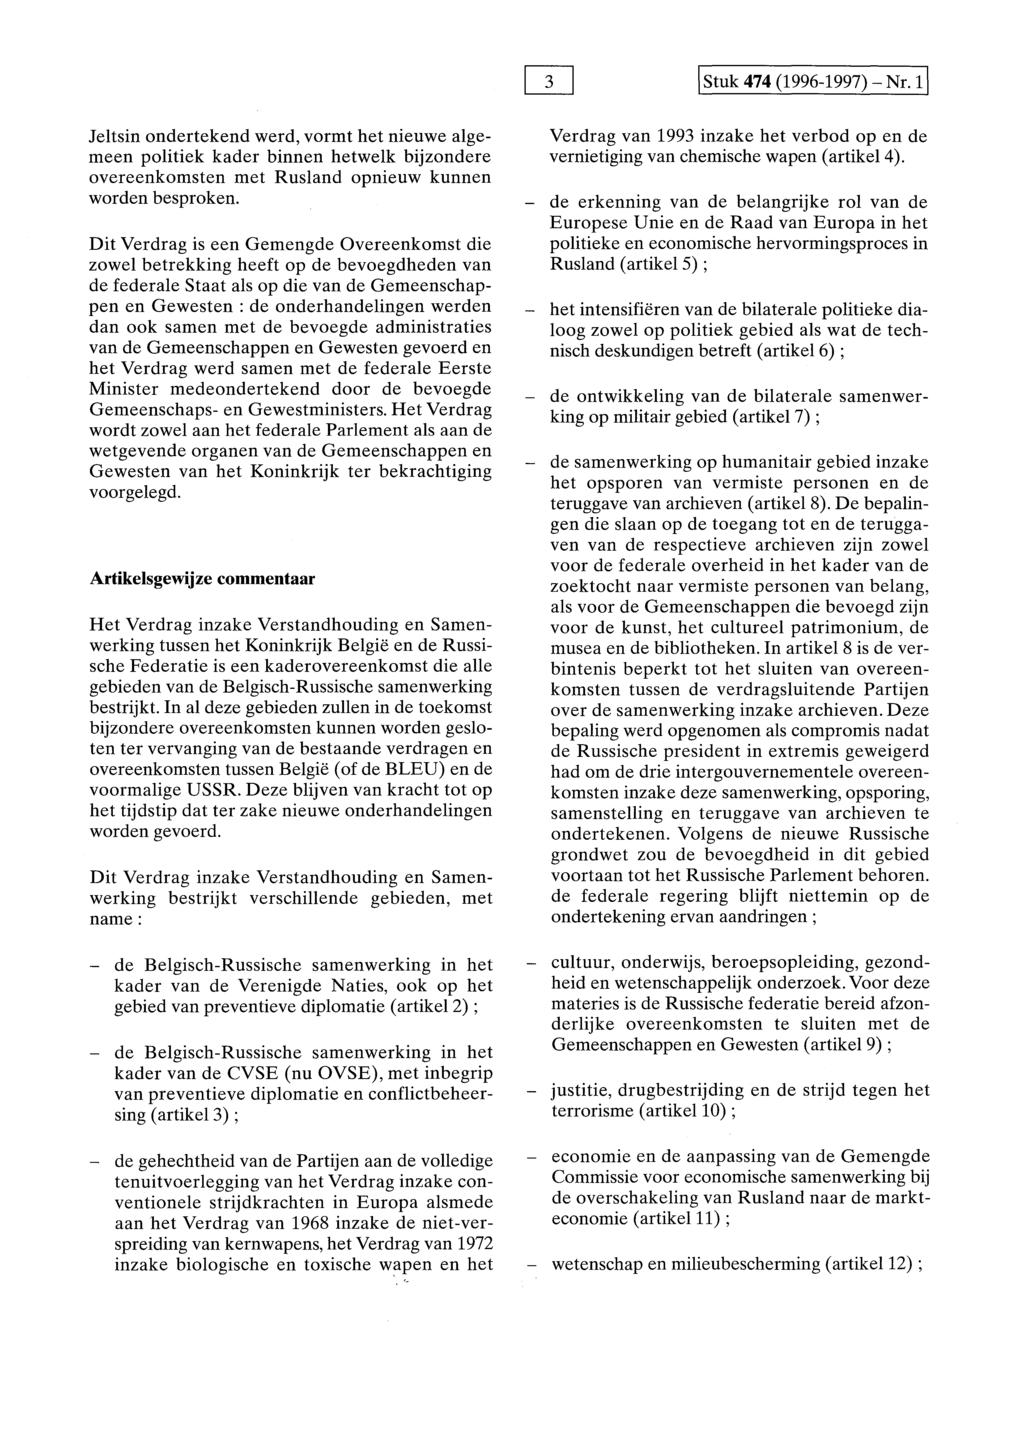 I Stuk 474 (1996-1997)- Nr. 11 Jeltsin ondertekend werd, vormt het nieuwe algemeen politiek kader binnen hetwelk bijzondere overeenkomsten met Rusland opnieuw kunnen worden besproken.